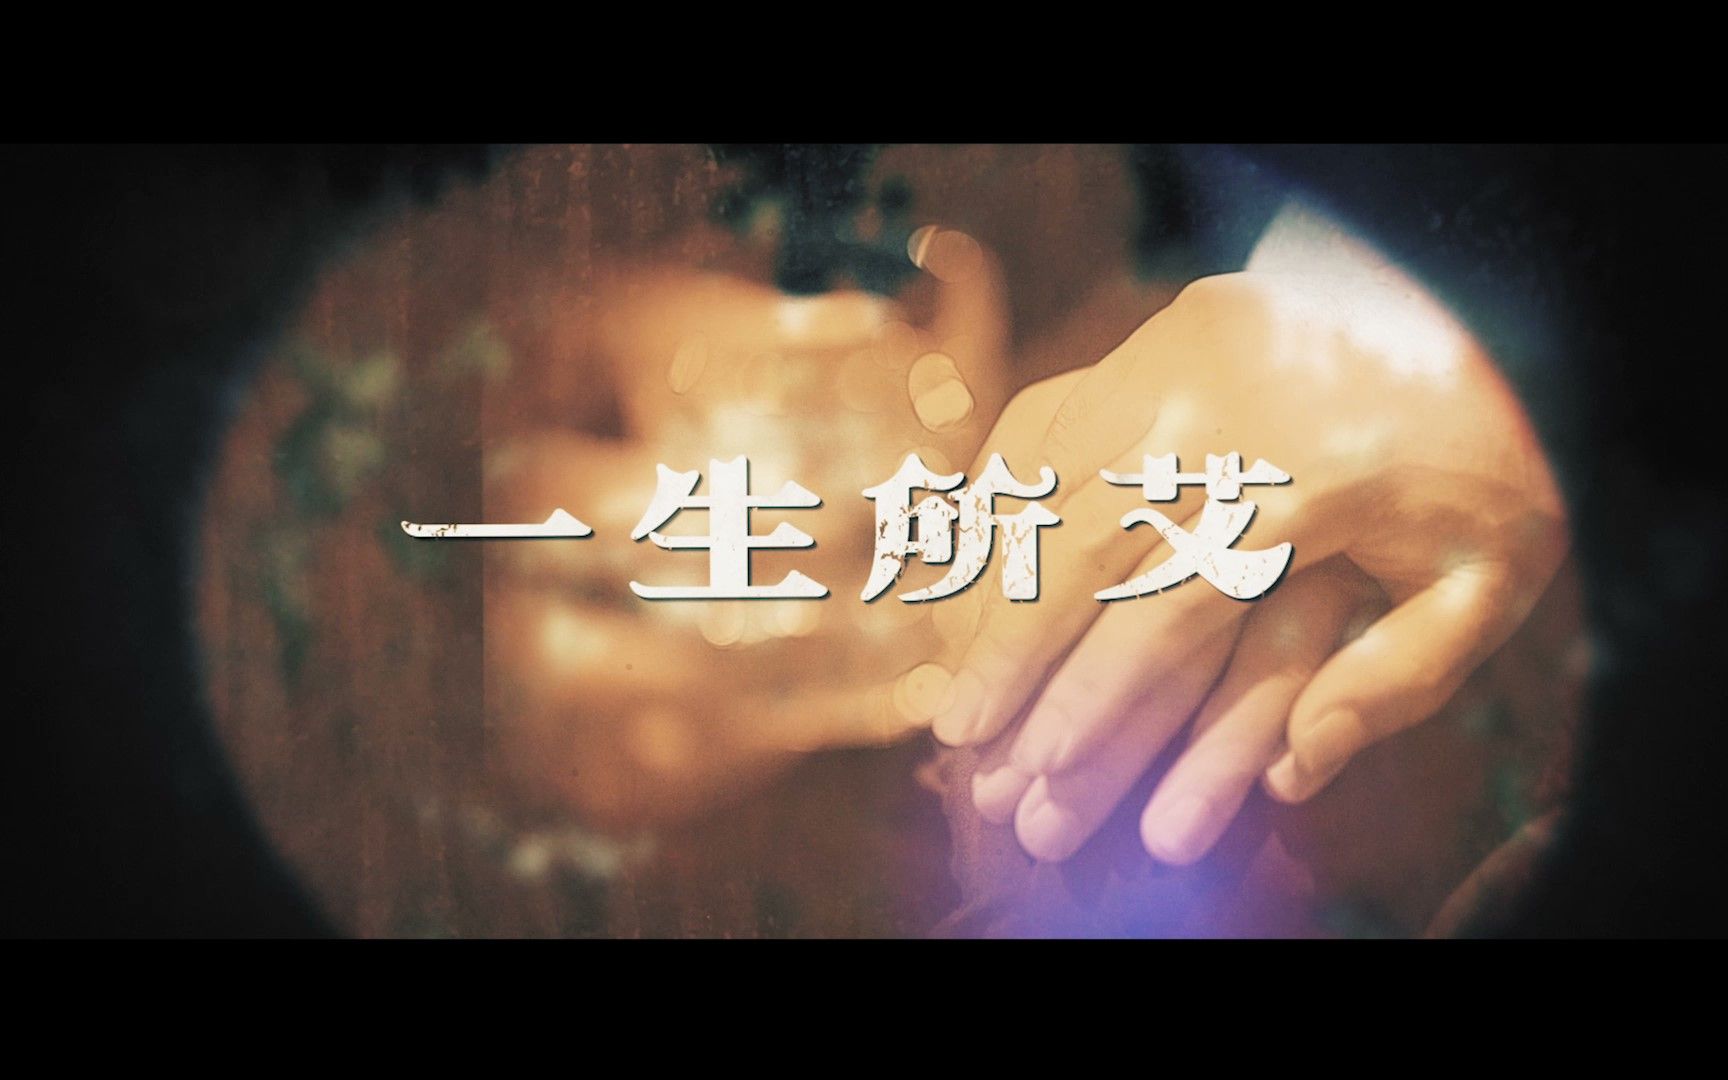 青少年感染艾滋病警示微电影《一生所艾》——中国性病艾滋病防治协会